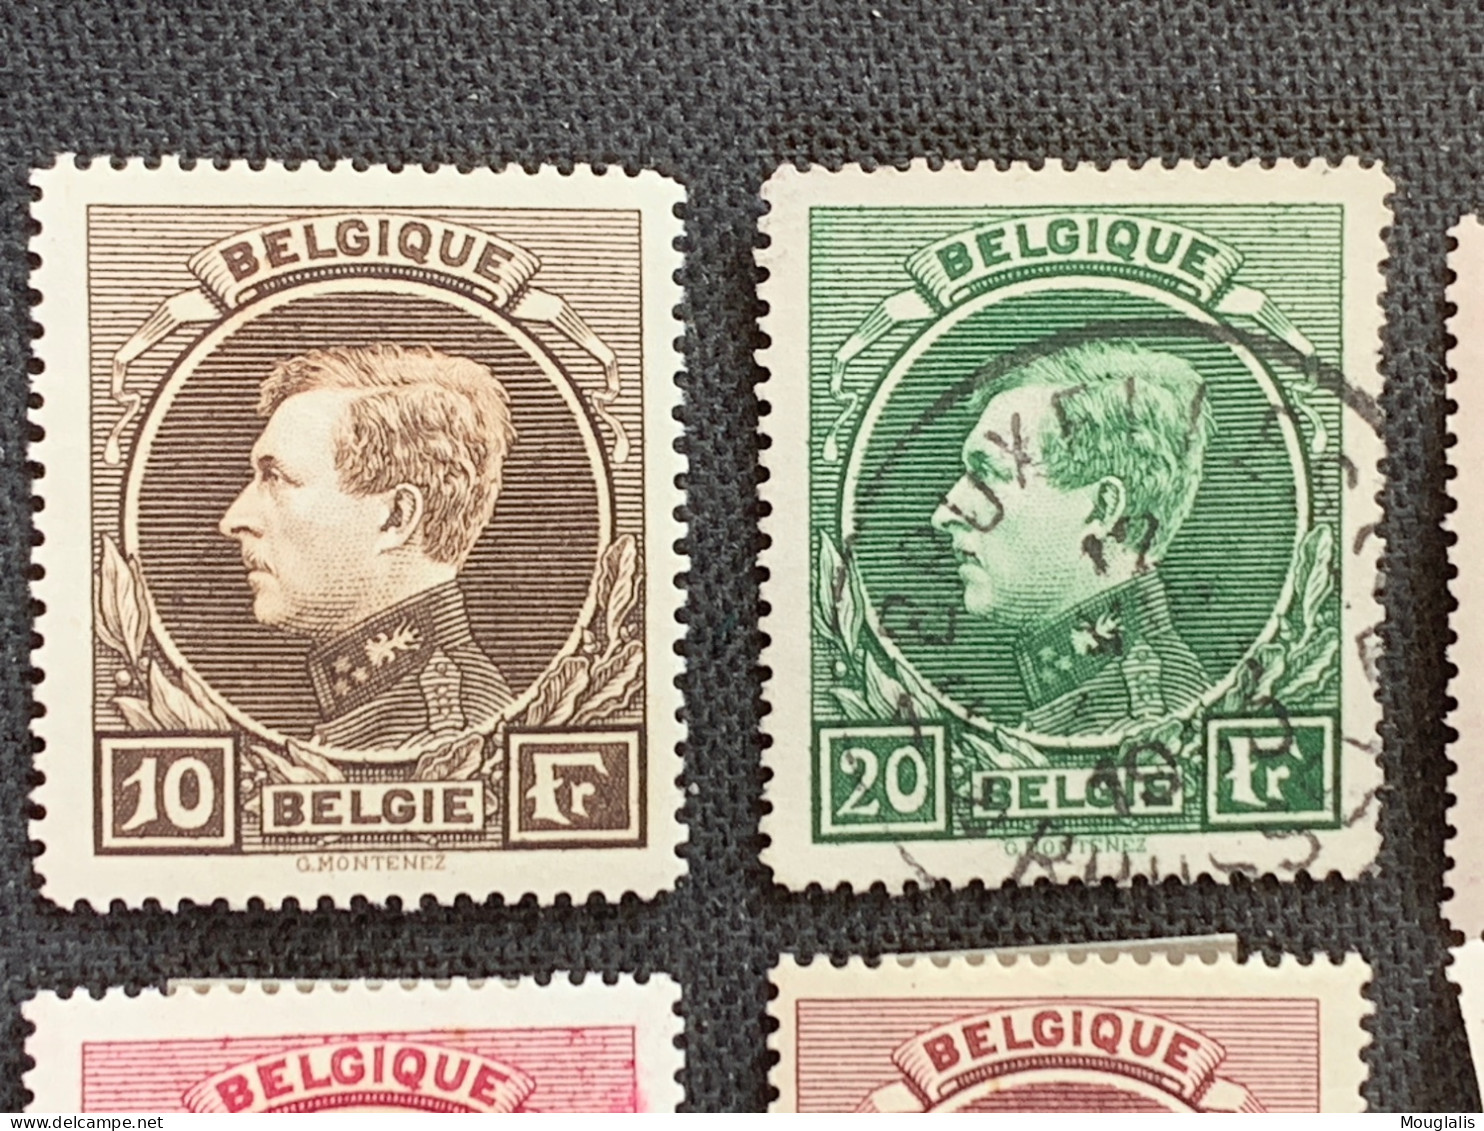 Belgique 289/292 Grand Montenez Albert I Avec Charnière 290 Oblitéré Les Autres Neufs - 1929-1941 Groot Montenez